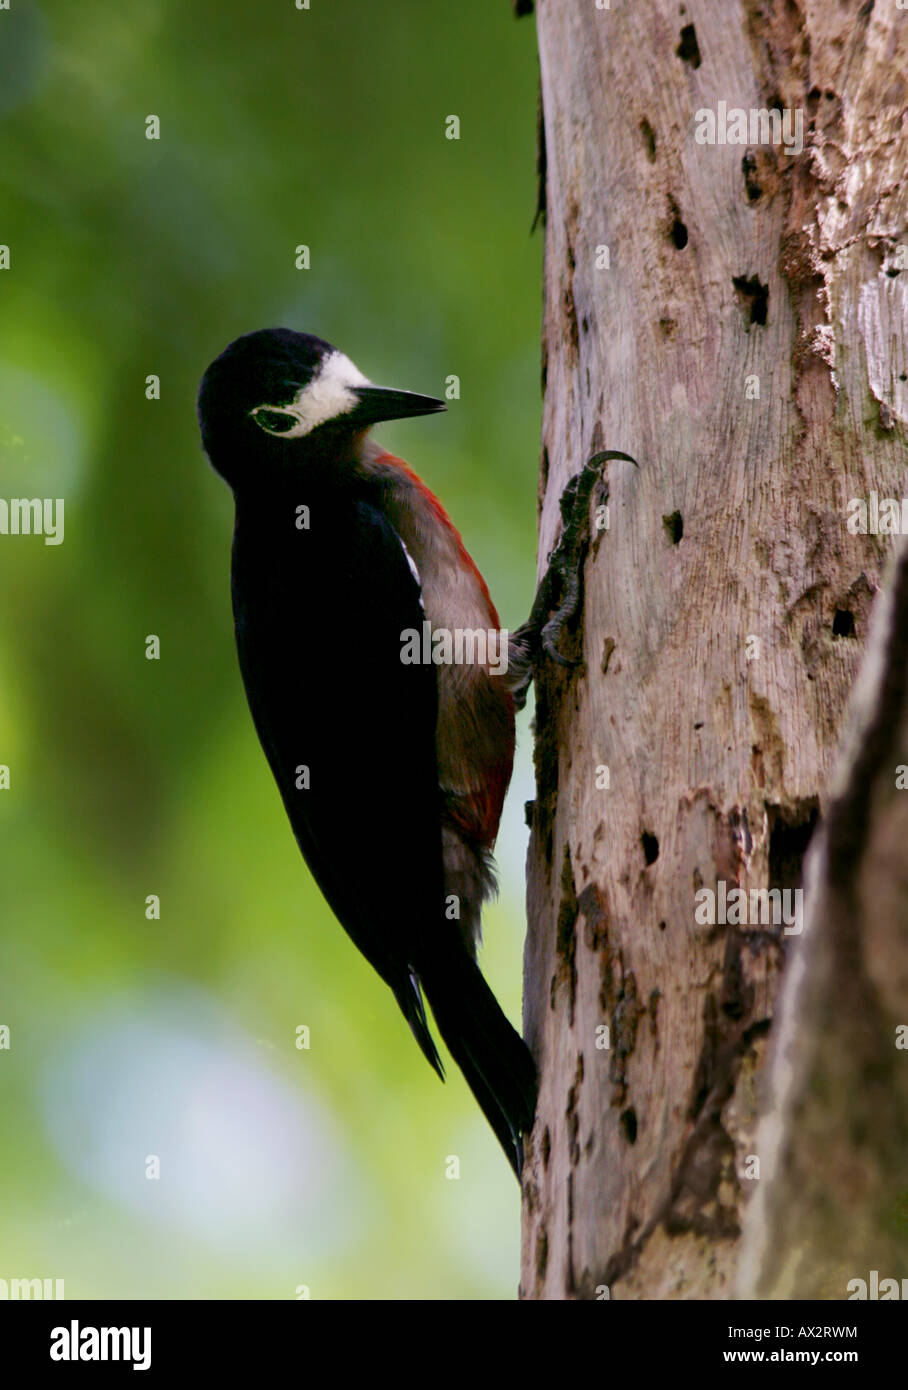 puerto rican woodpecker El Yunque rain forest Stock Photo